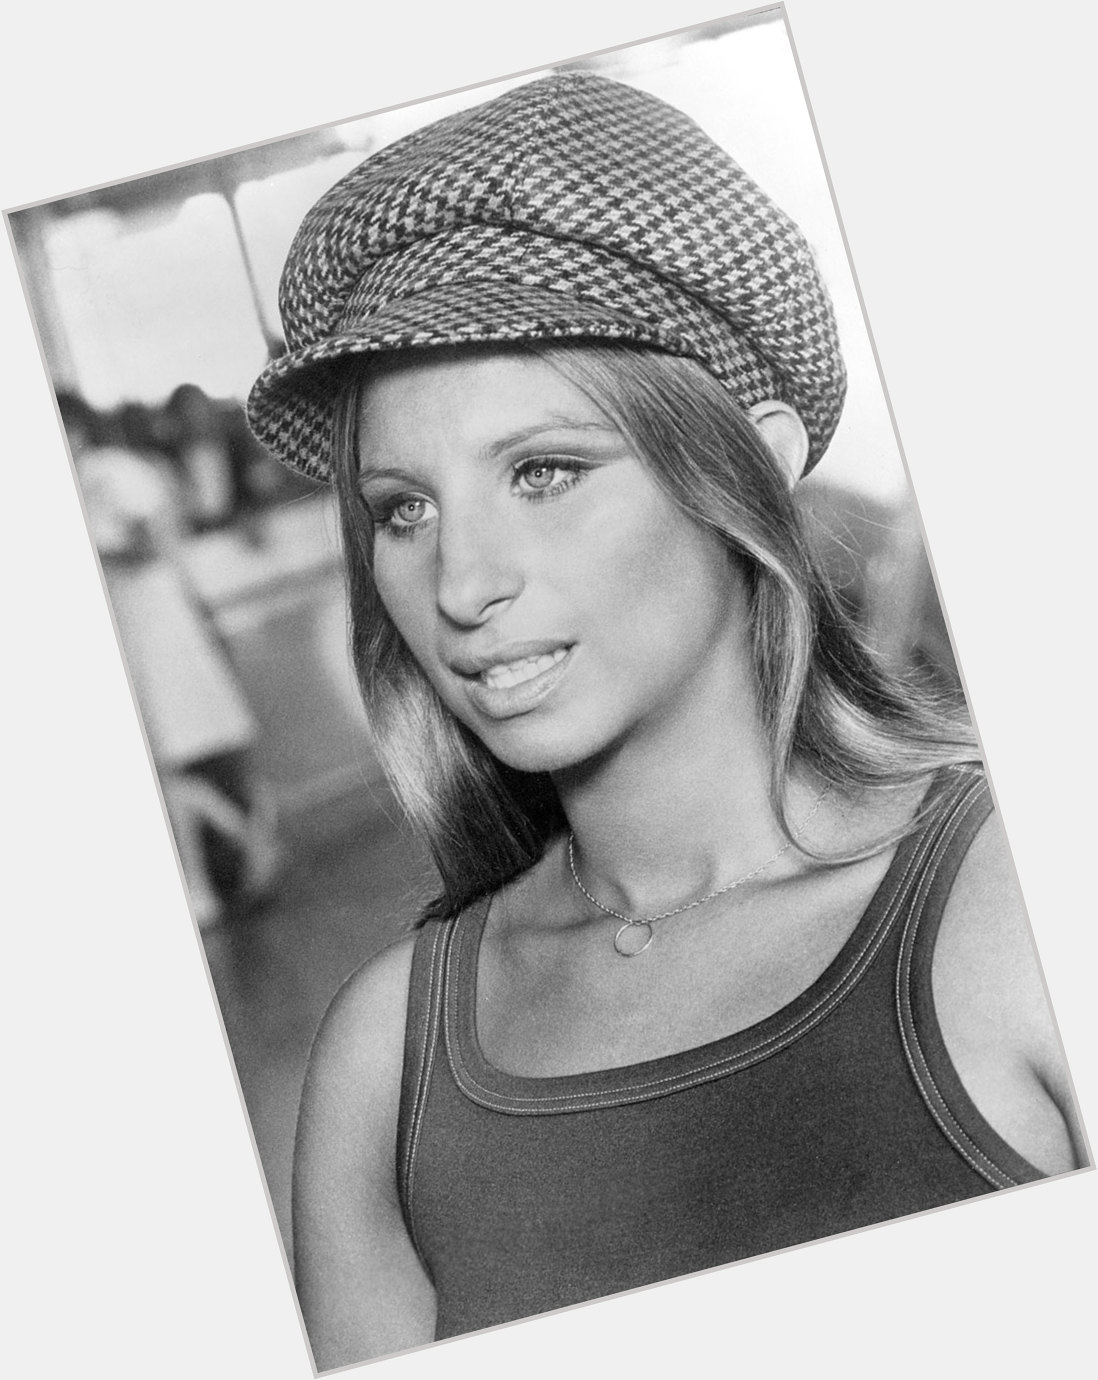 Happy birthday Barbra Streisand, 76 today 